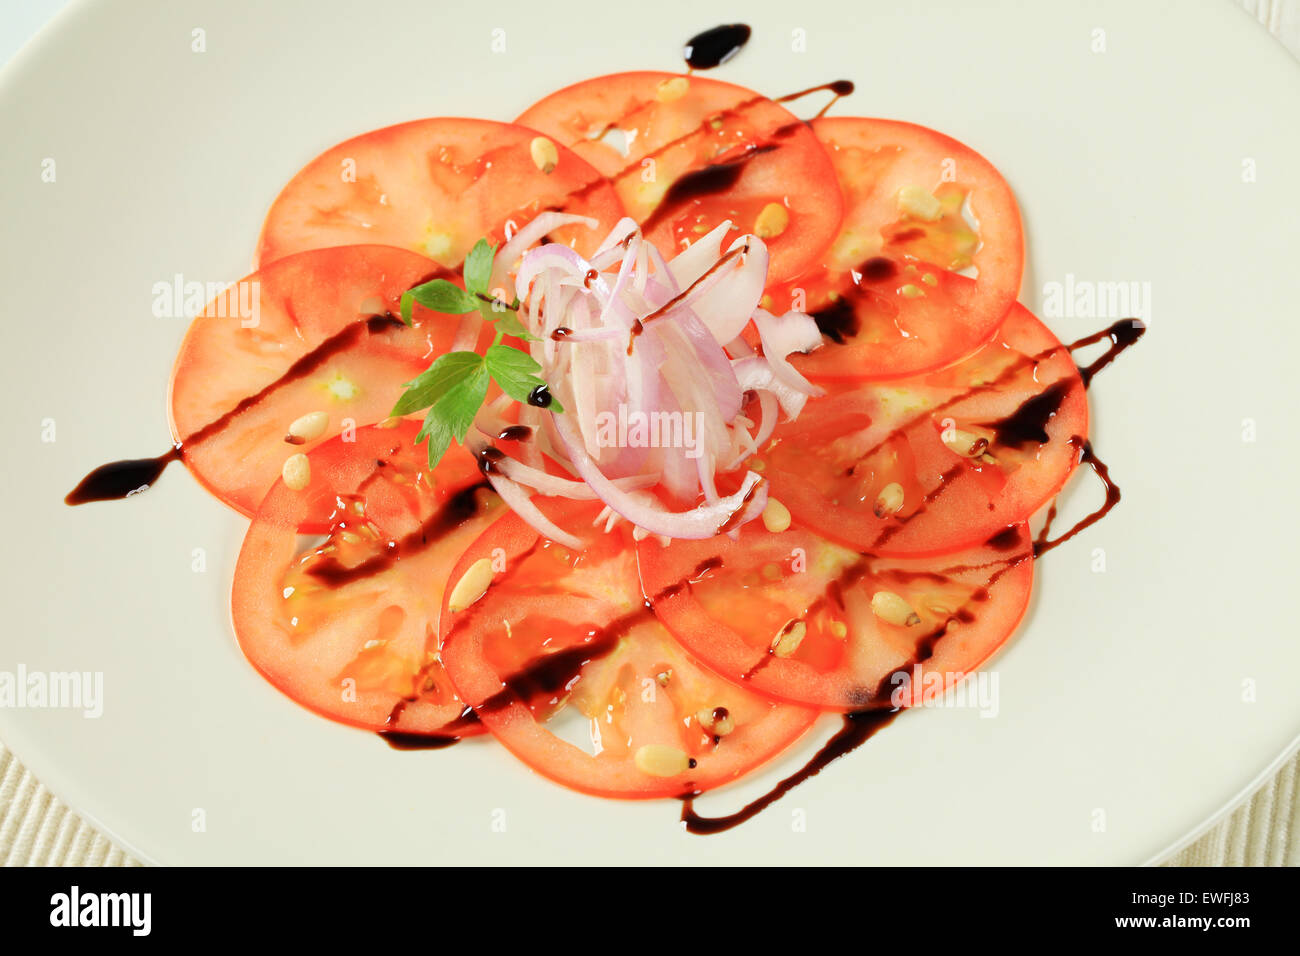 Tomato carpaccio with onion and balsamic vinegar Stock Photo